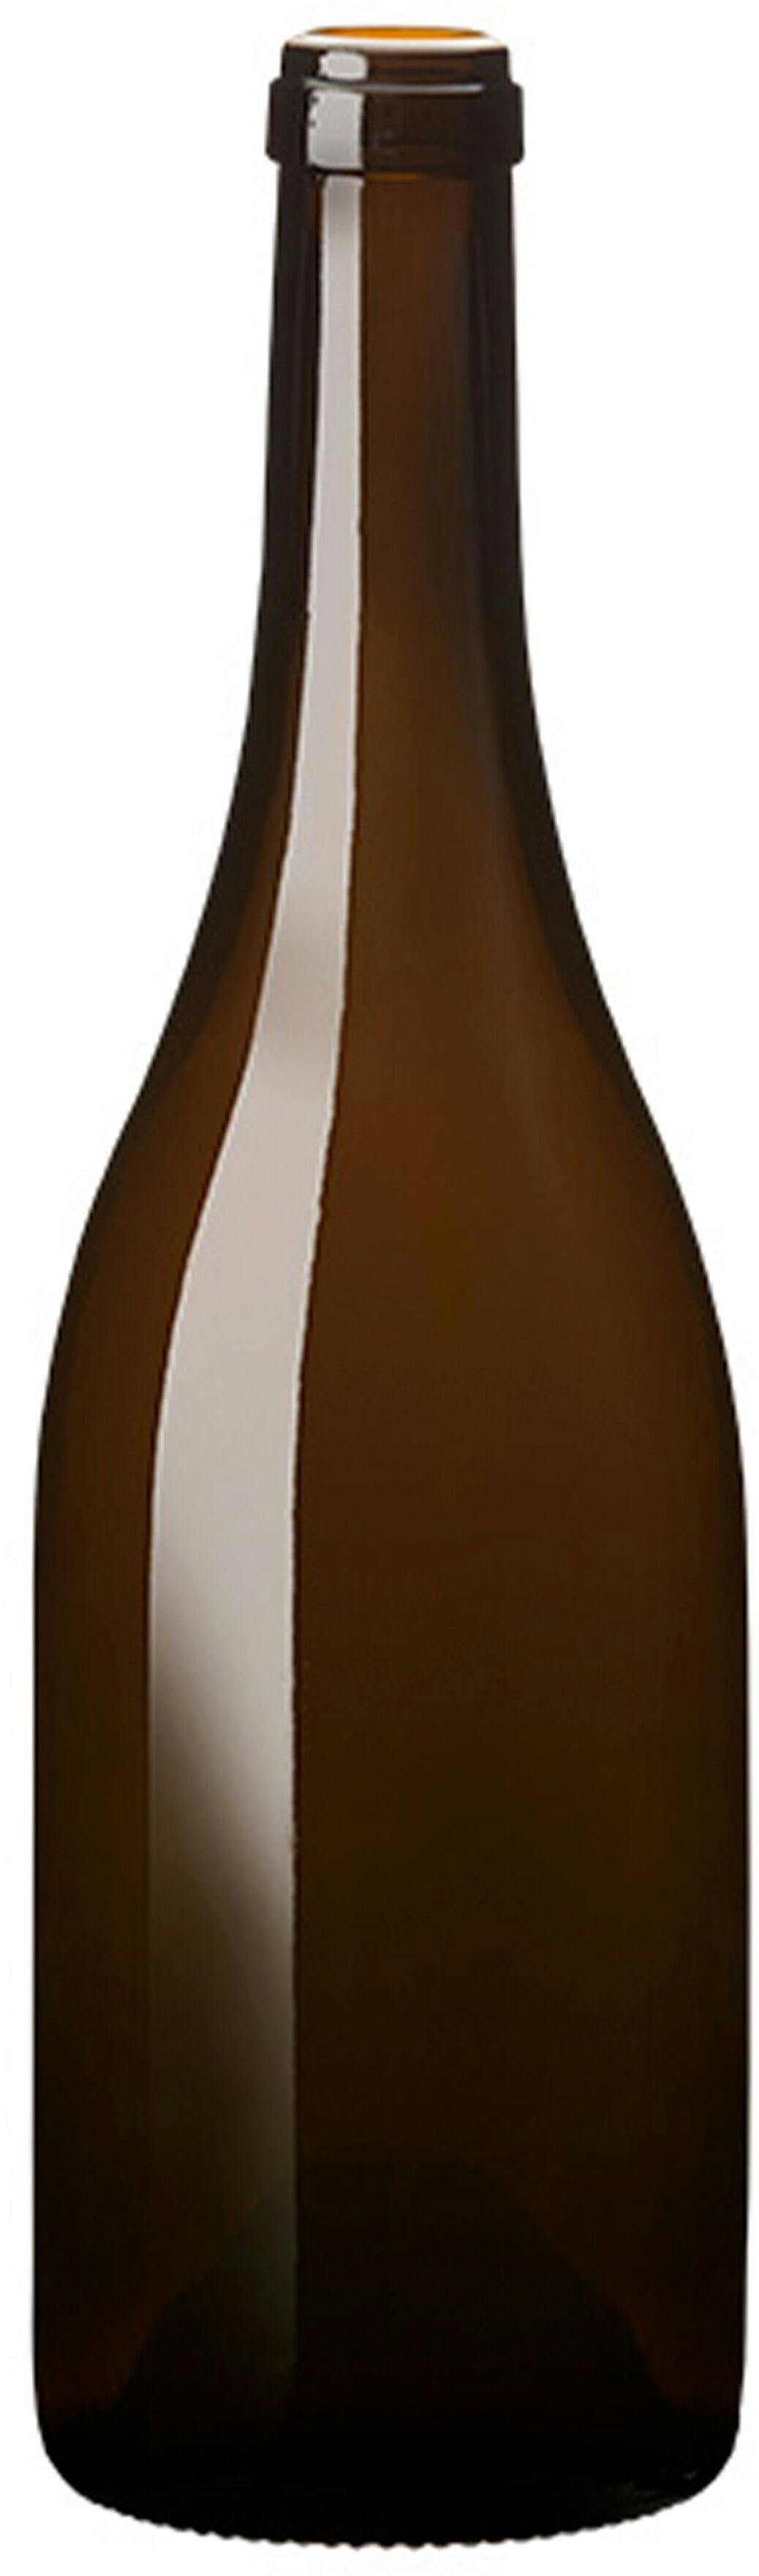 Flasche Burgunder  ISIS 750 ml BG-Korken